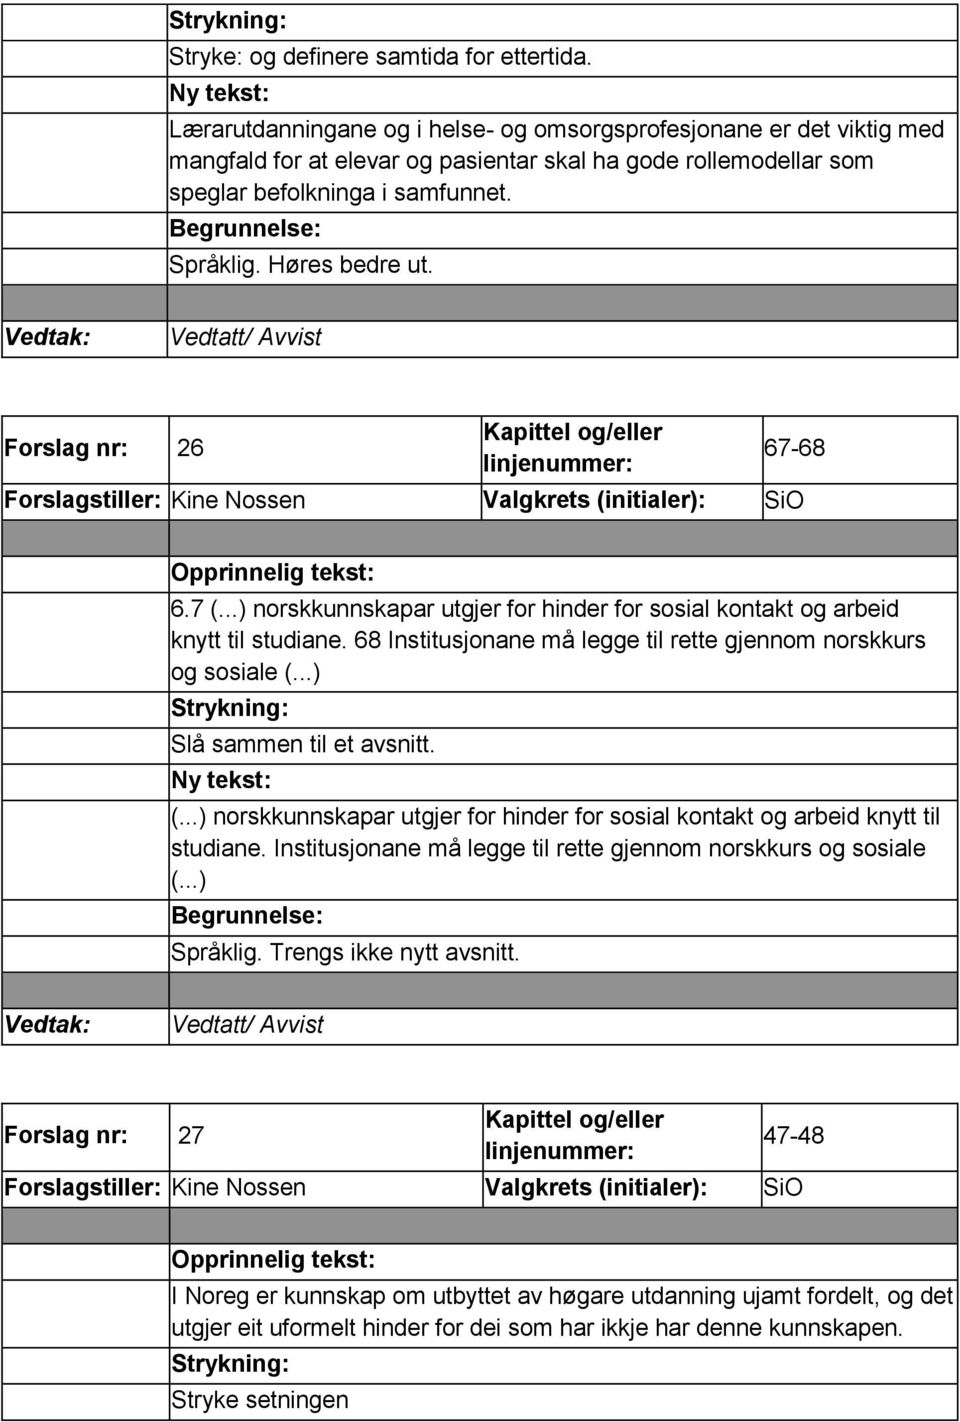 Forslag nr: 26 Forslagstiller: Kine Nossen Valgkrets (initialer): SiO 67-68 6.7 (...) norskkunnskapar utgjer for hinder for sosial kontakt og arbeid knytt til studiane.